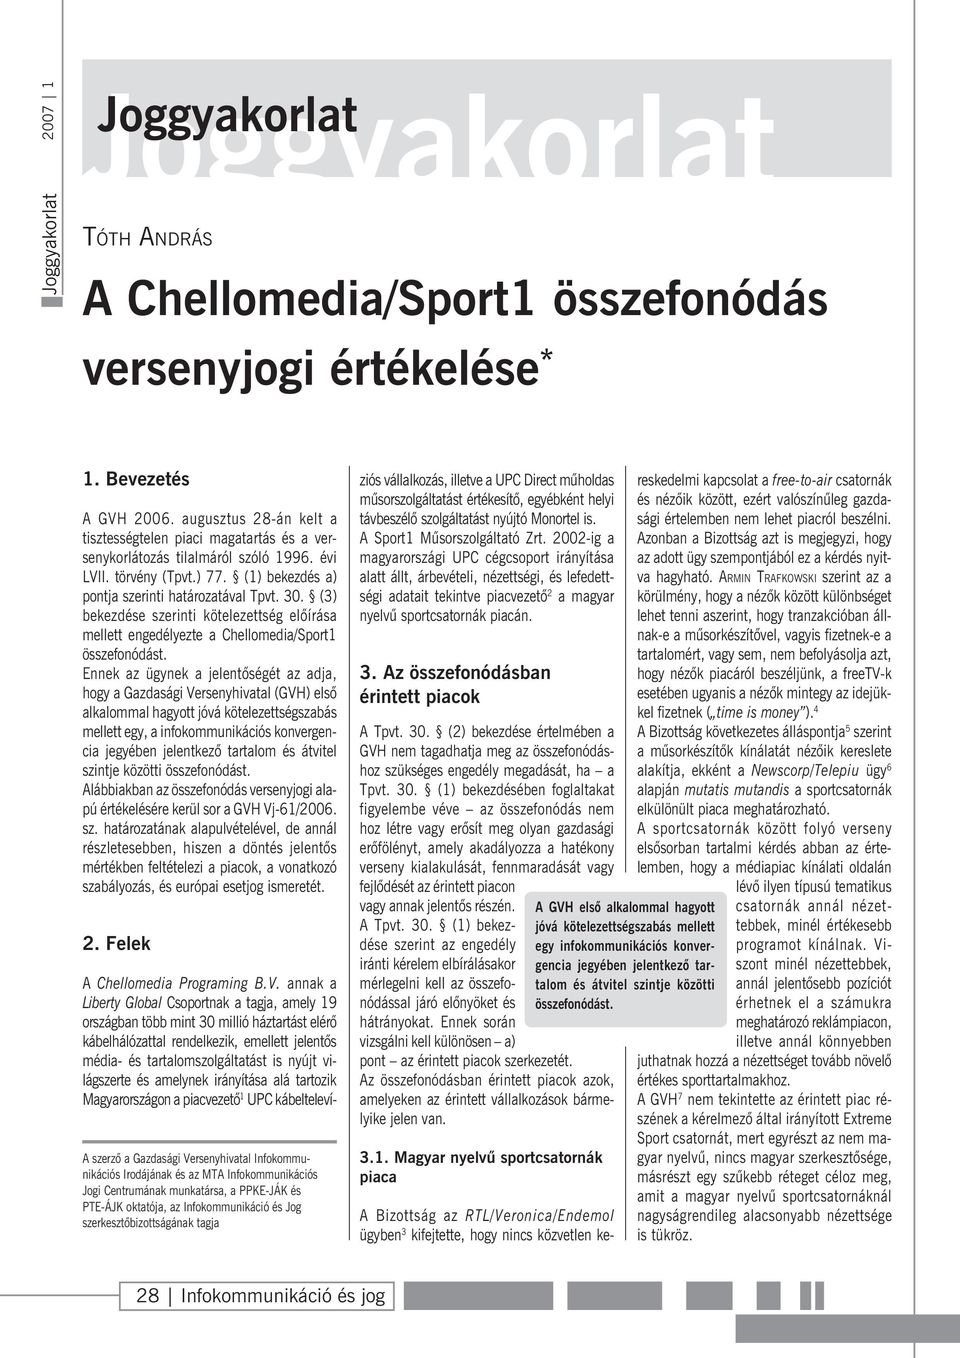 (3) bekezdése szerinti kötelezettség elõírása mellett engedélyezte a Chellomedia/Sport1 összefonódást.